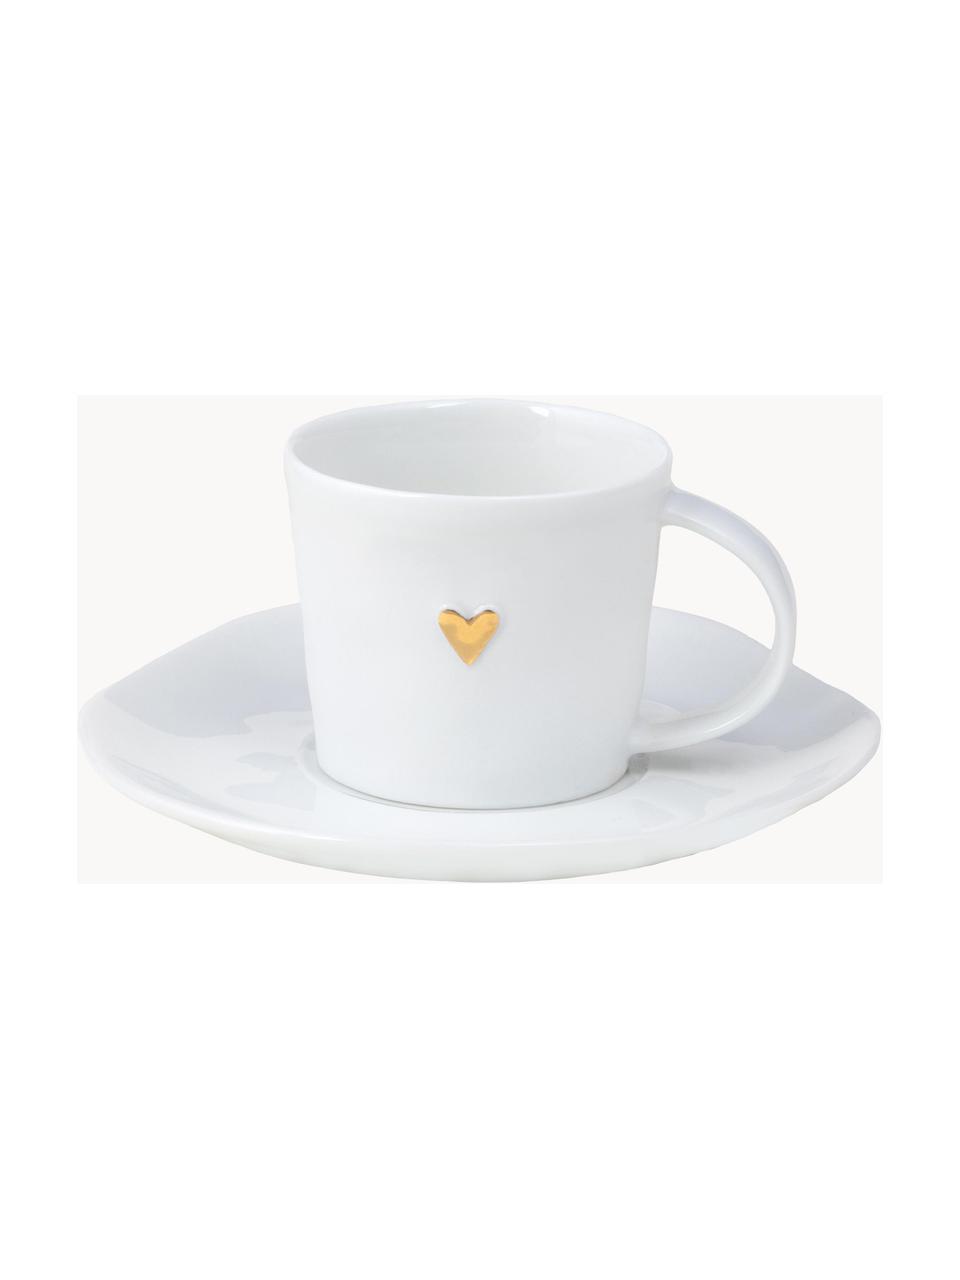 Tazzina caffè con piattino in porcellana Heart, Porcellana smaltata, Bianco, dorato, Ø 6 x Alt. 5 cm, 80 ml